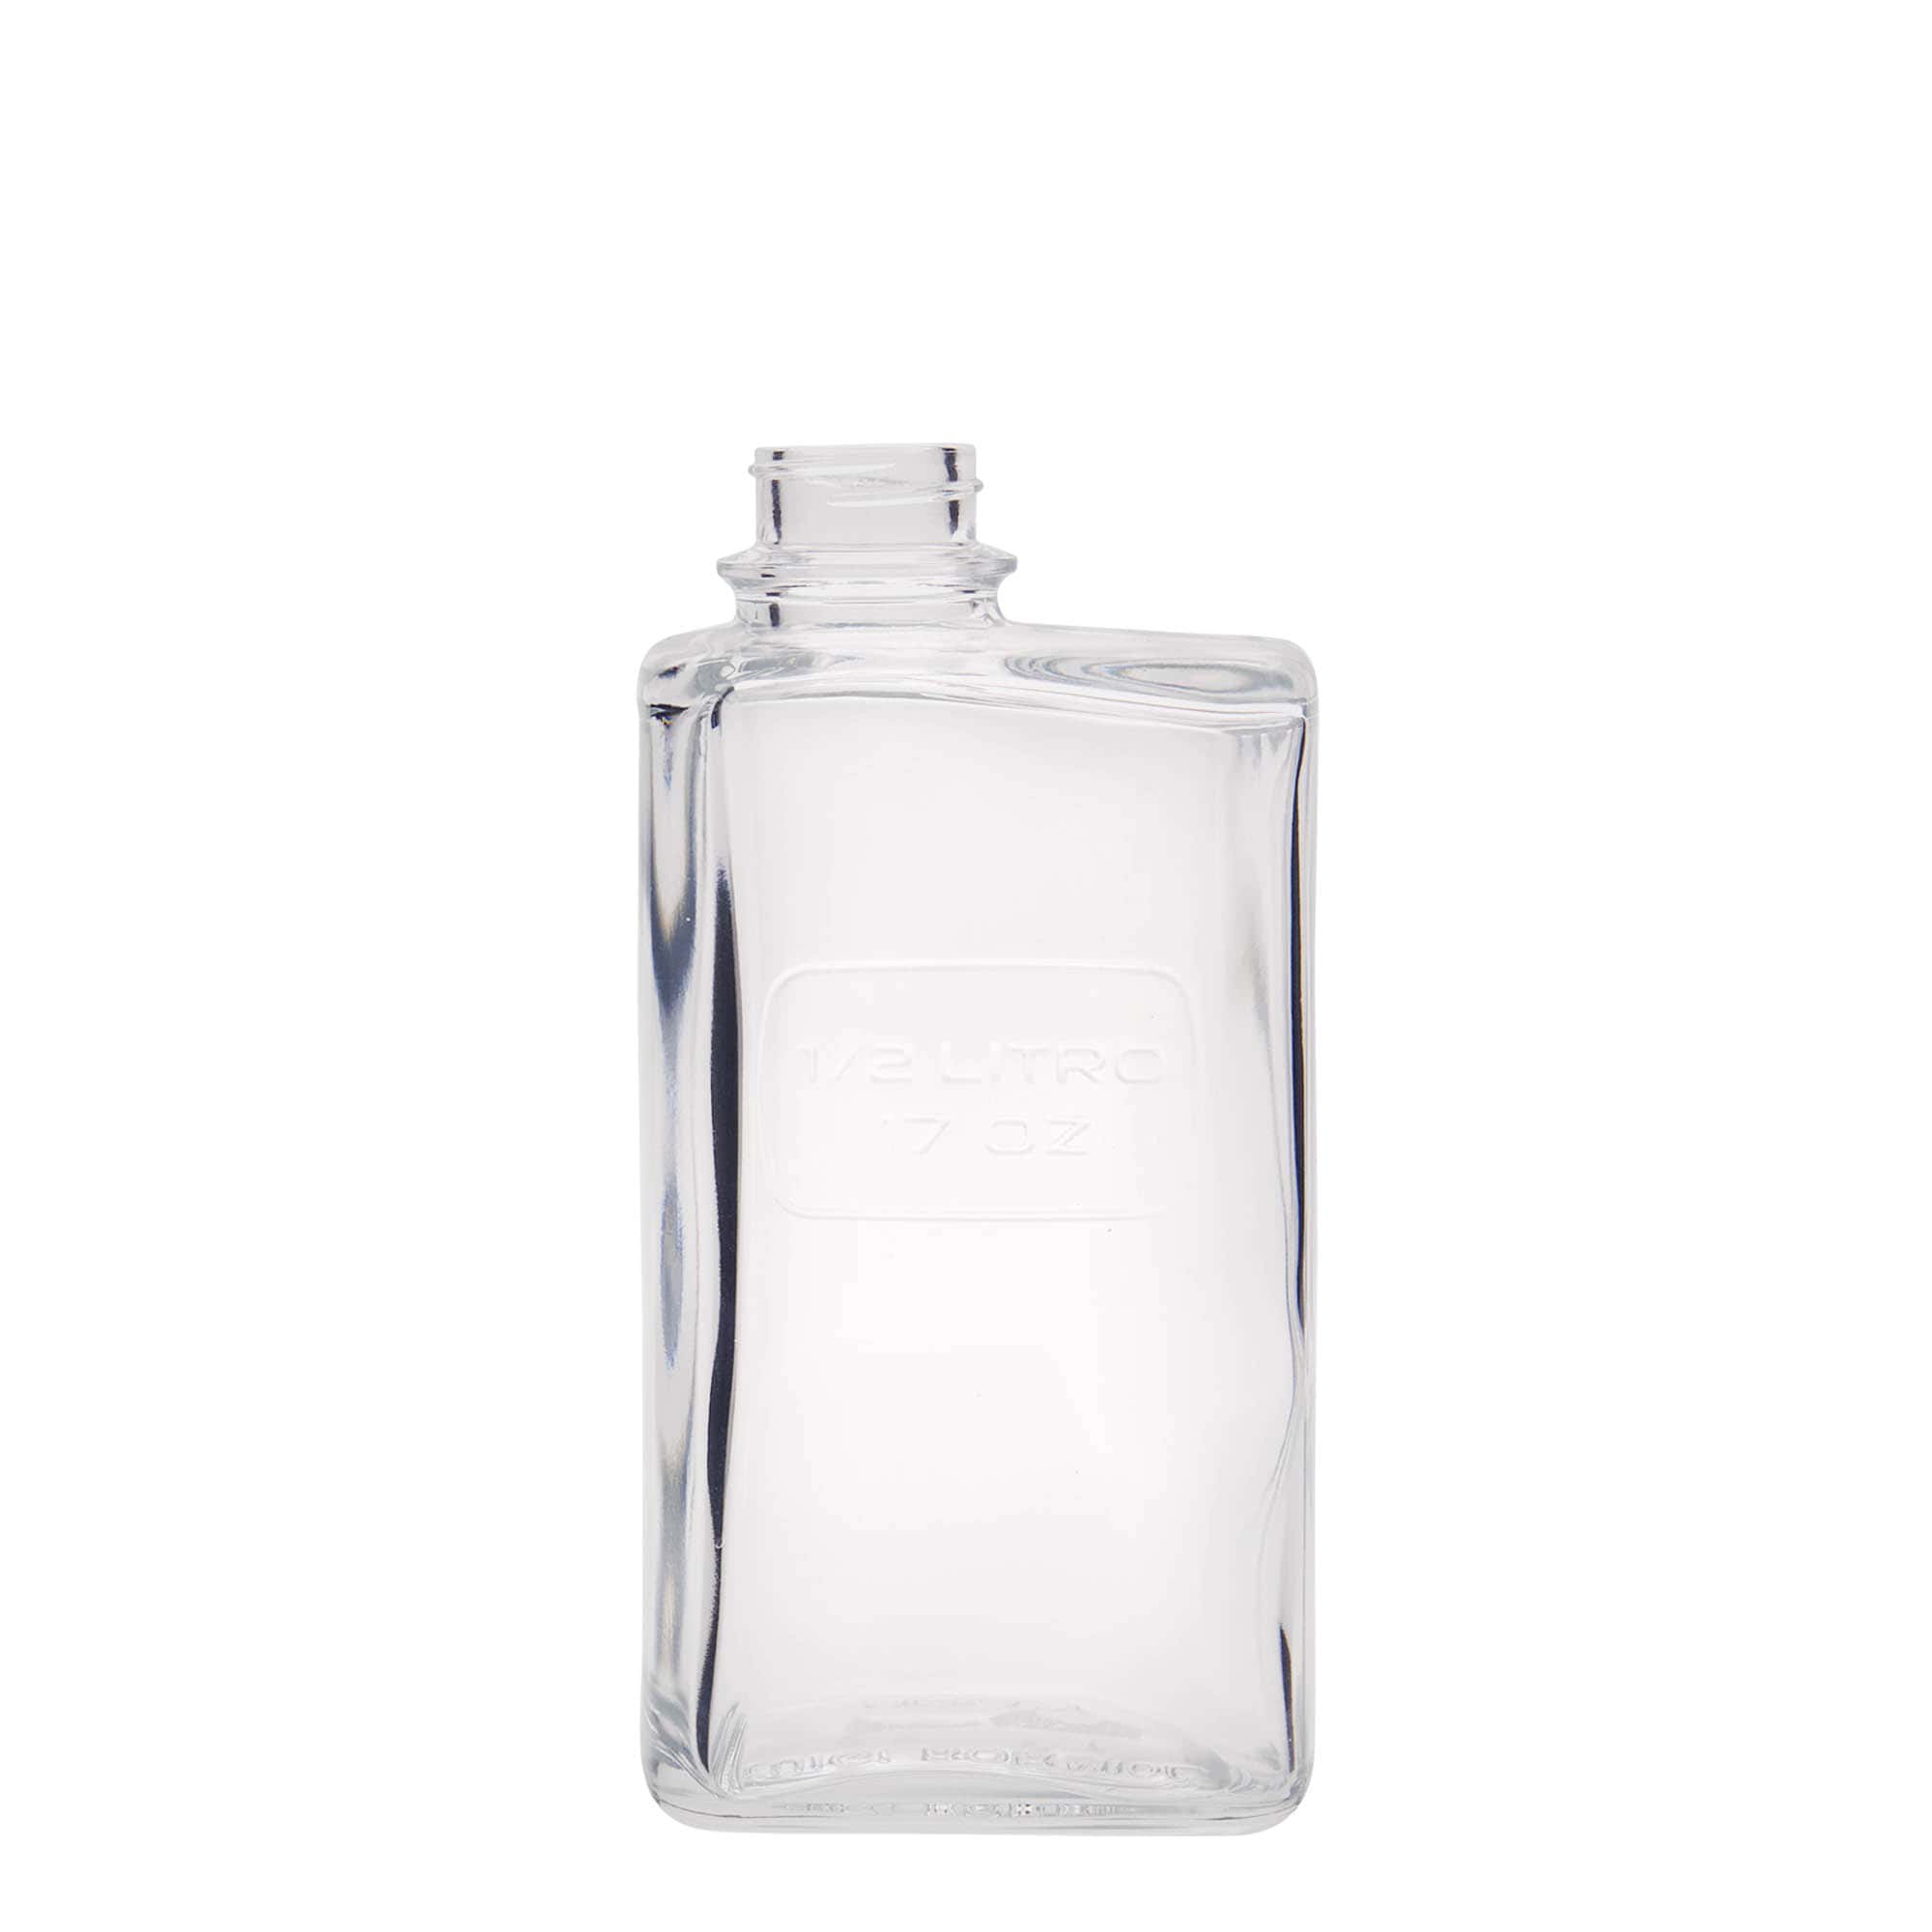 500 ml glass bottle 'Optima Lattina', rectangular, closure: screw cap